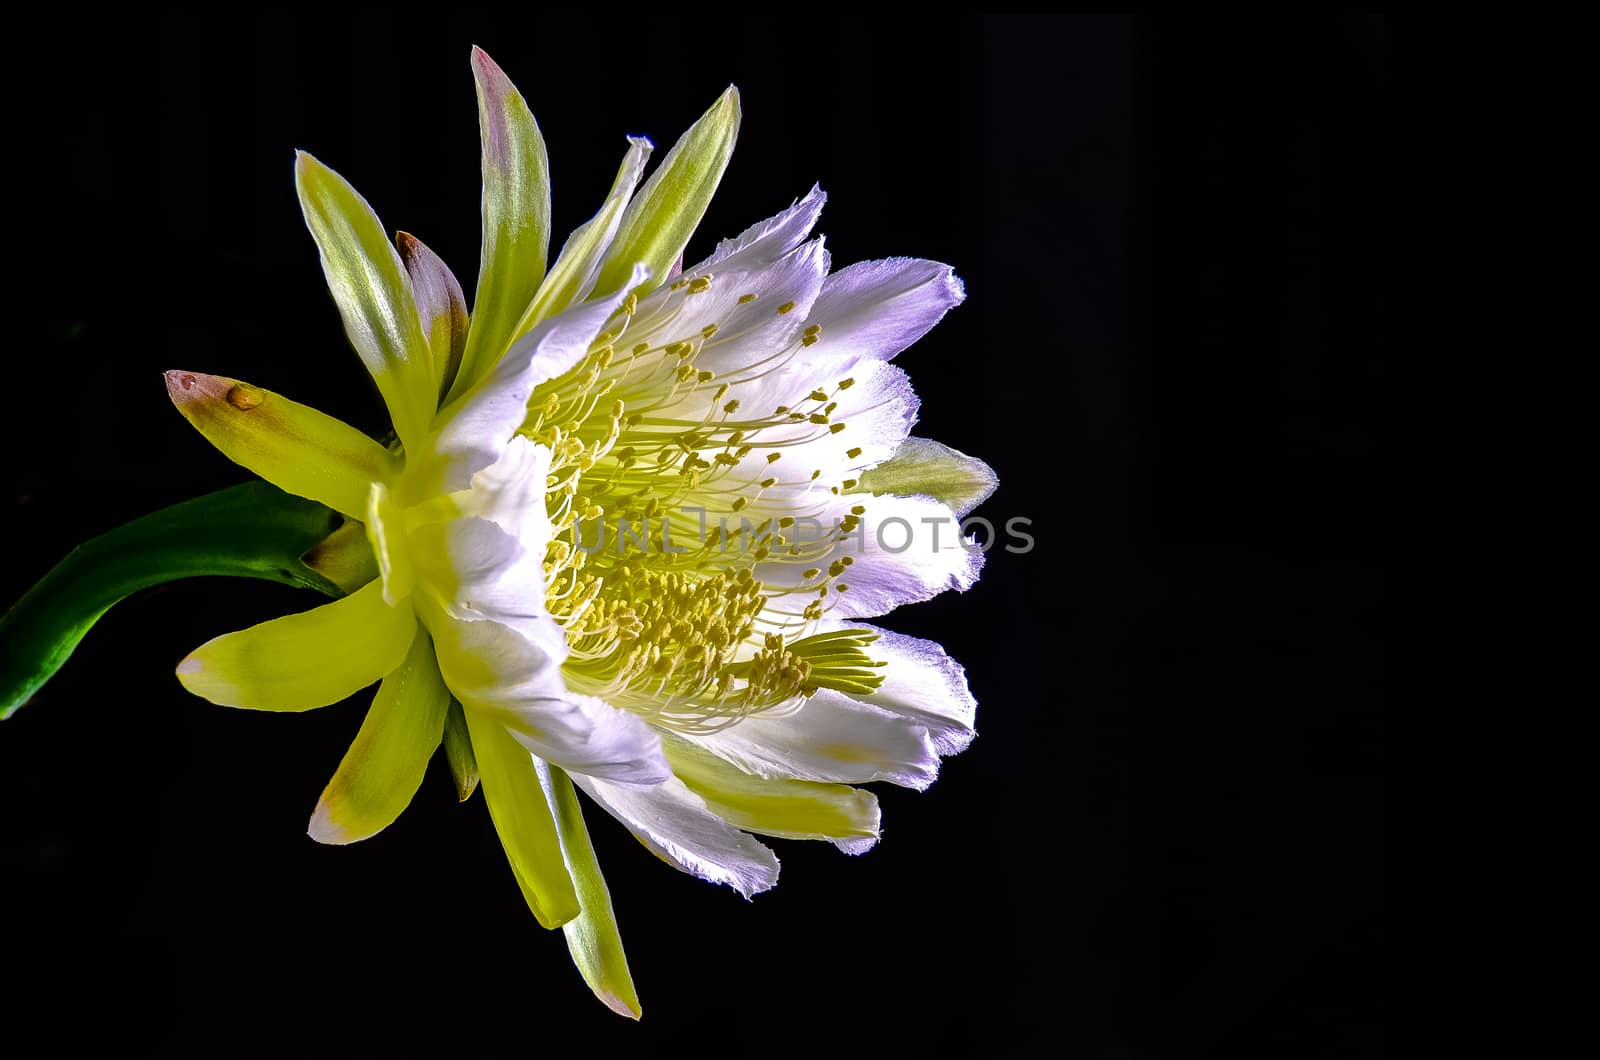 Night Blooming Cereus by p.studio66